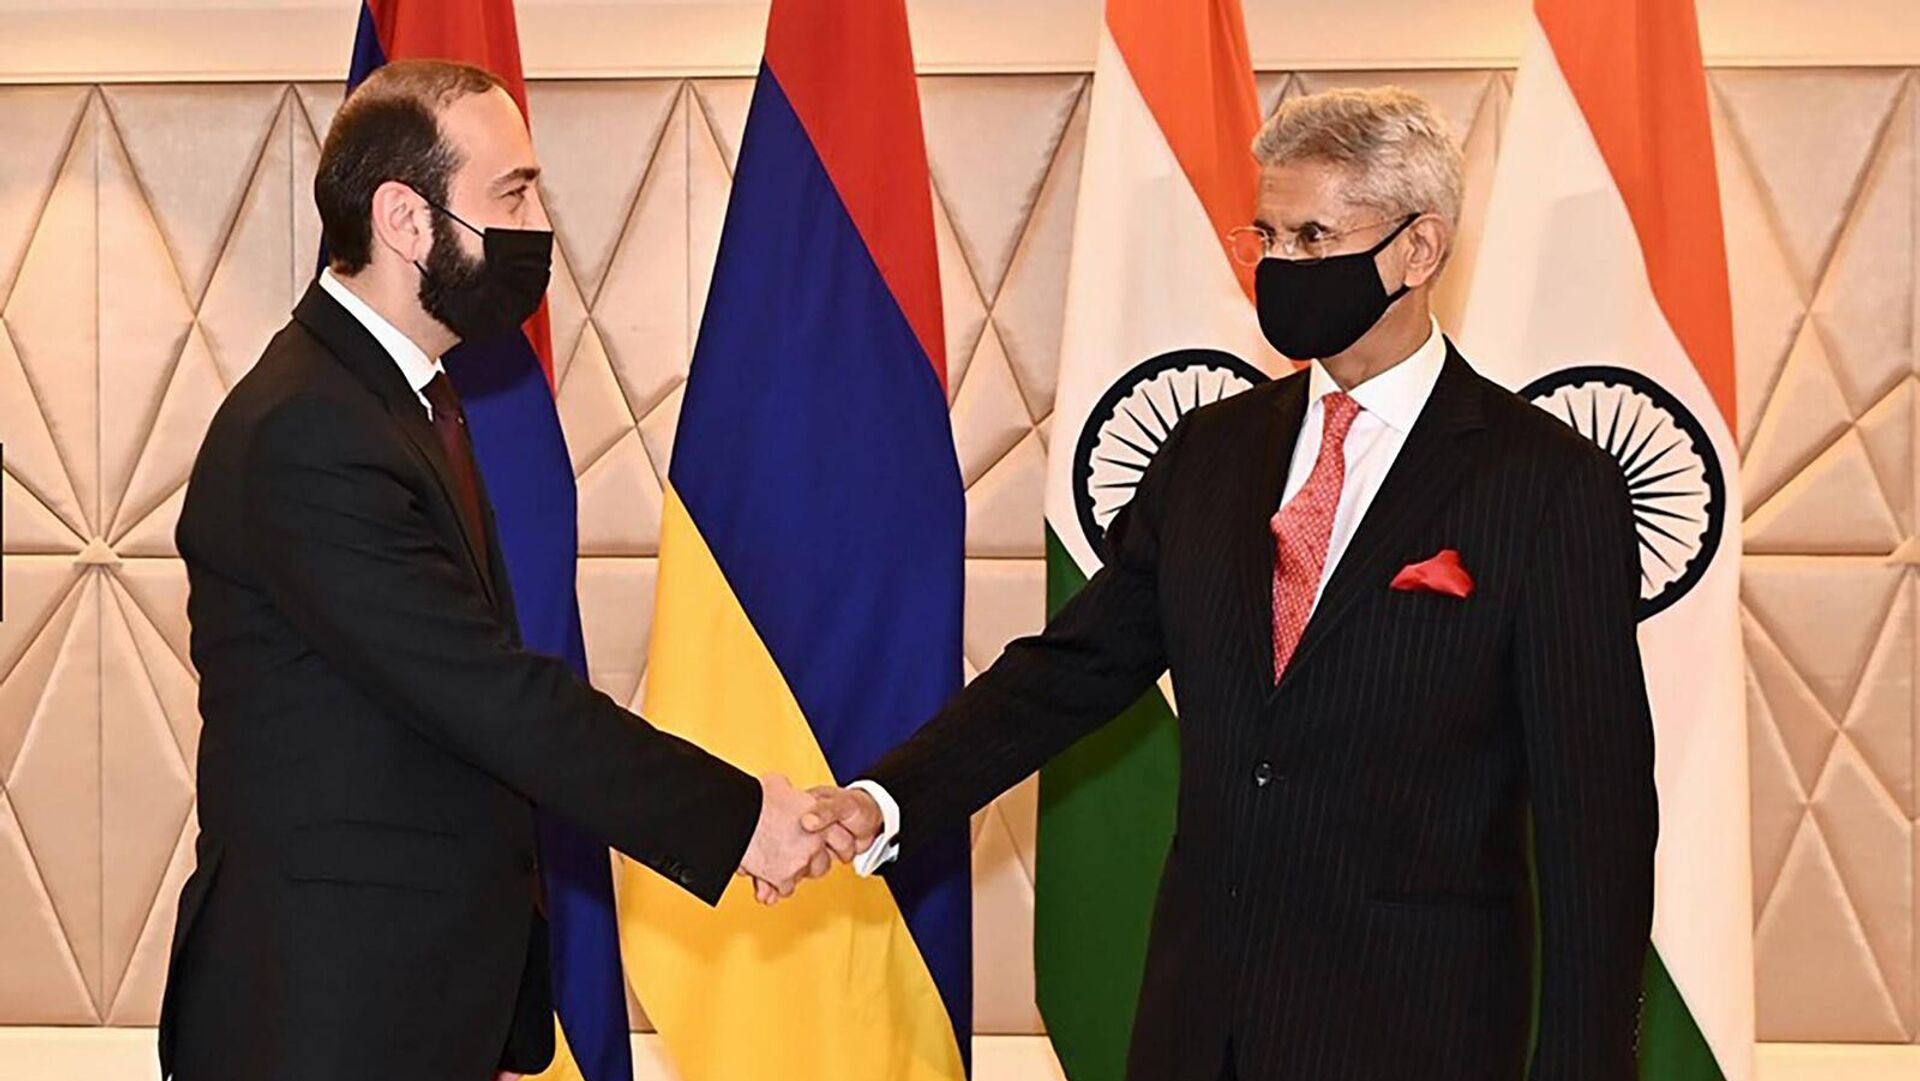 Министр иностранных дел Армении Арарат Мирзоян встретился с министром иностранных дел Индии Субраманьямом Джайшанкаром (25 апреля 2022). Нью-Дели - Sputnik Армения, 1920, 25.04.2022